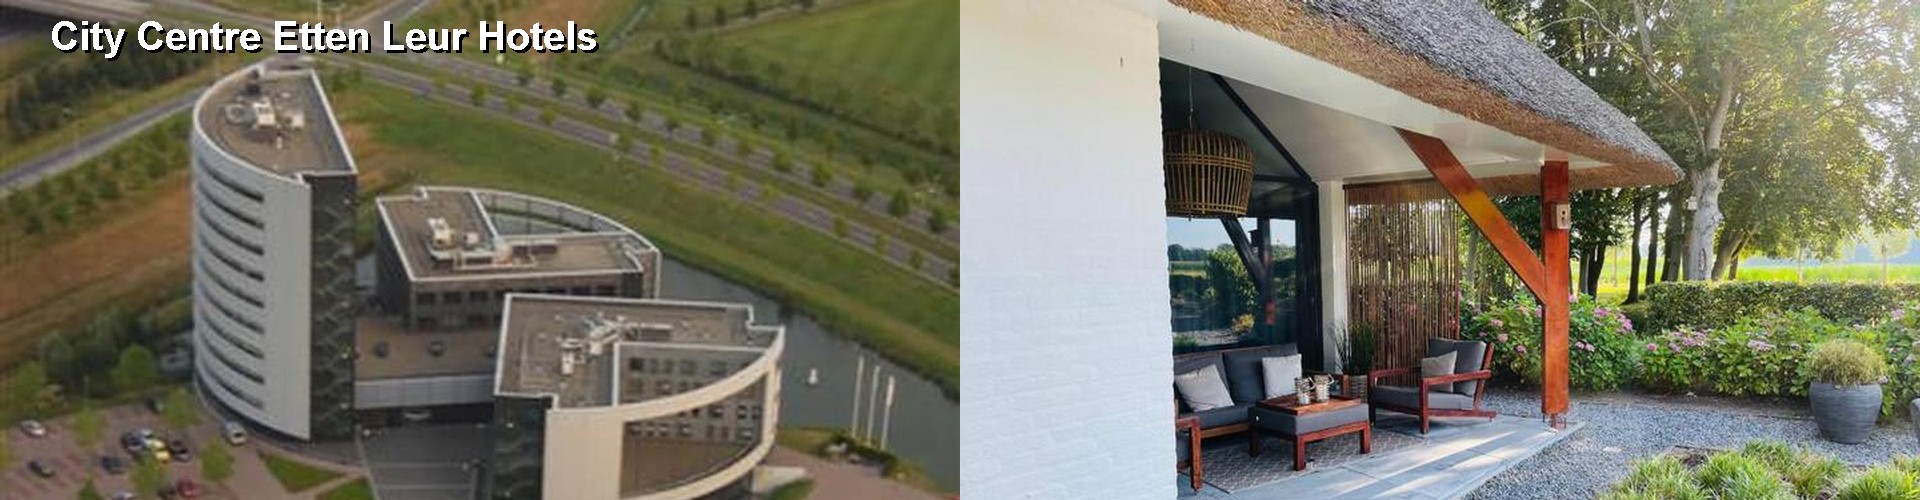 5 Best Hotels near City Centre Etten Leur